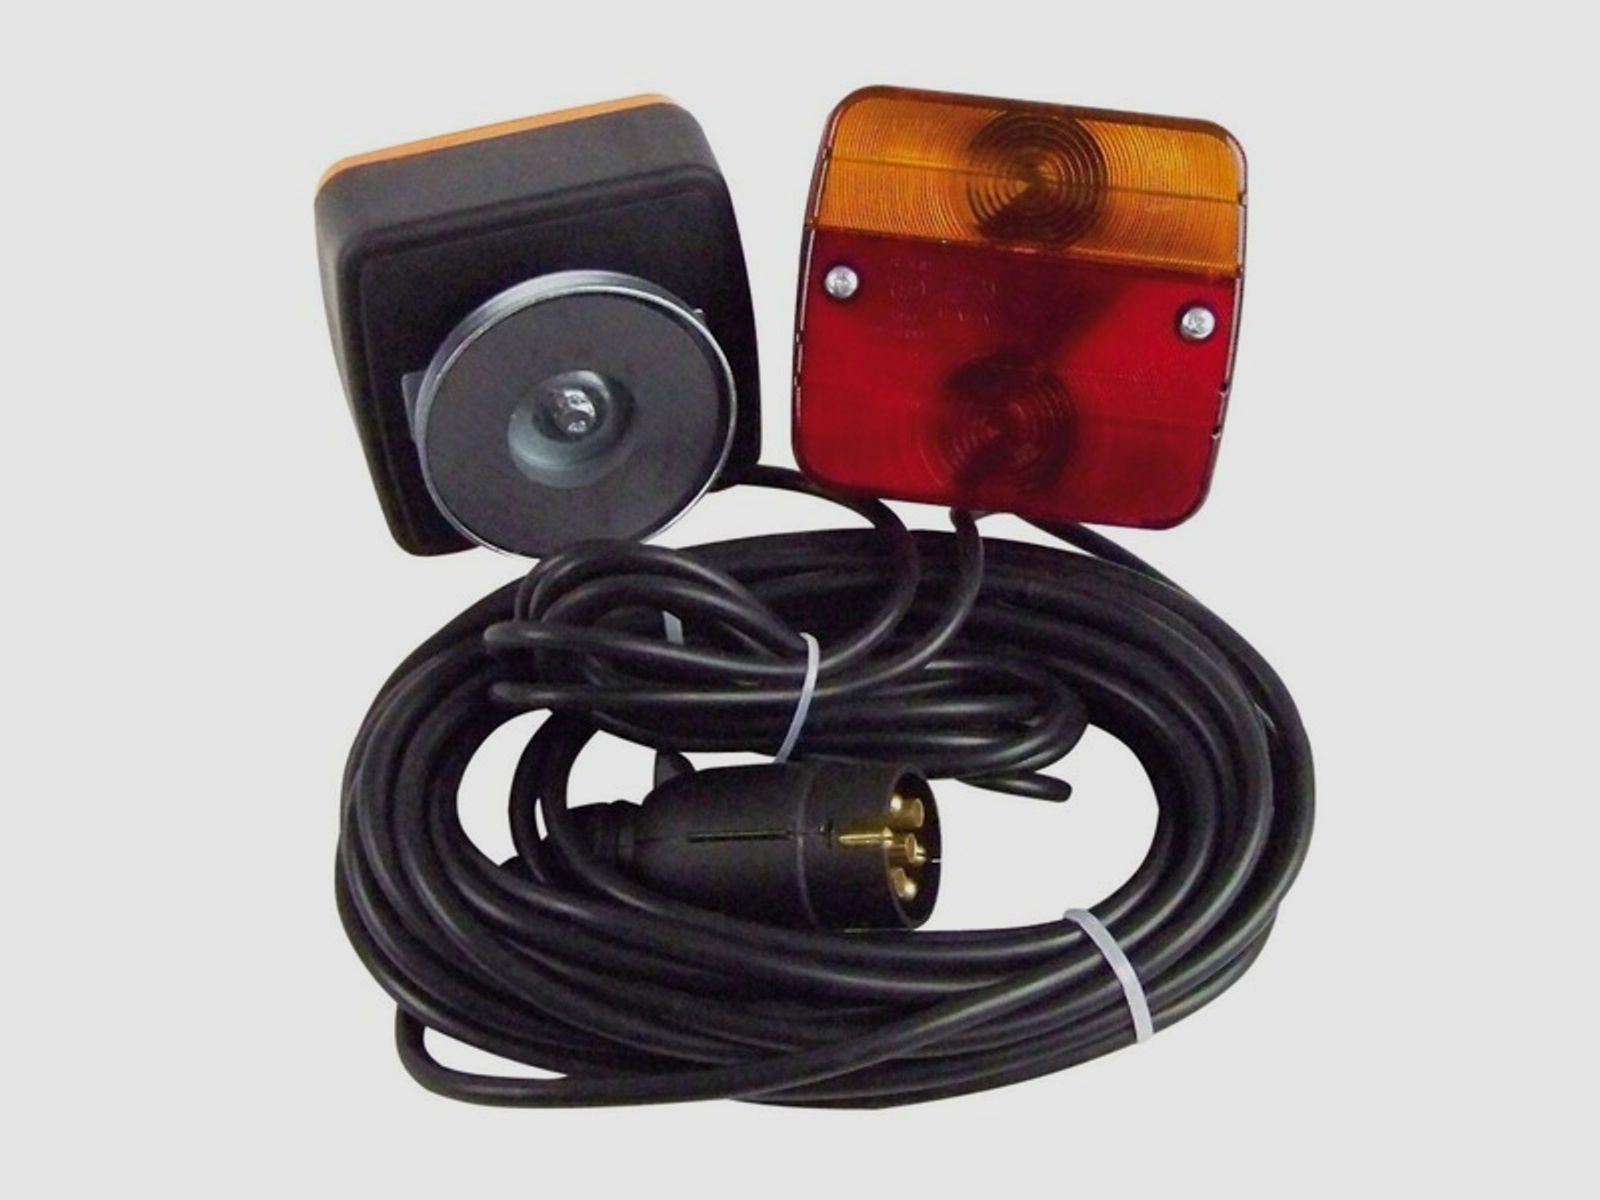 Dreifunktionsleuchte mit Magnethalter , 7,5m Kabel mit 7-poligem Stecker und 2,5m Zwischenkabel